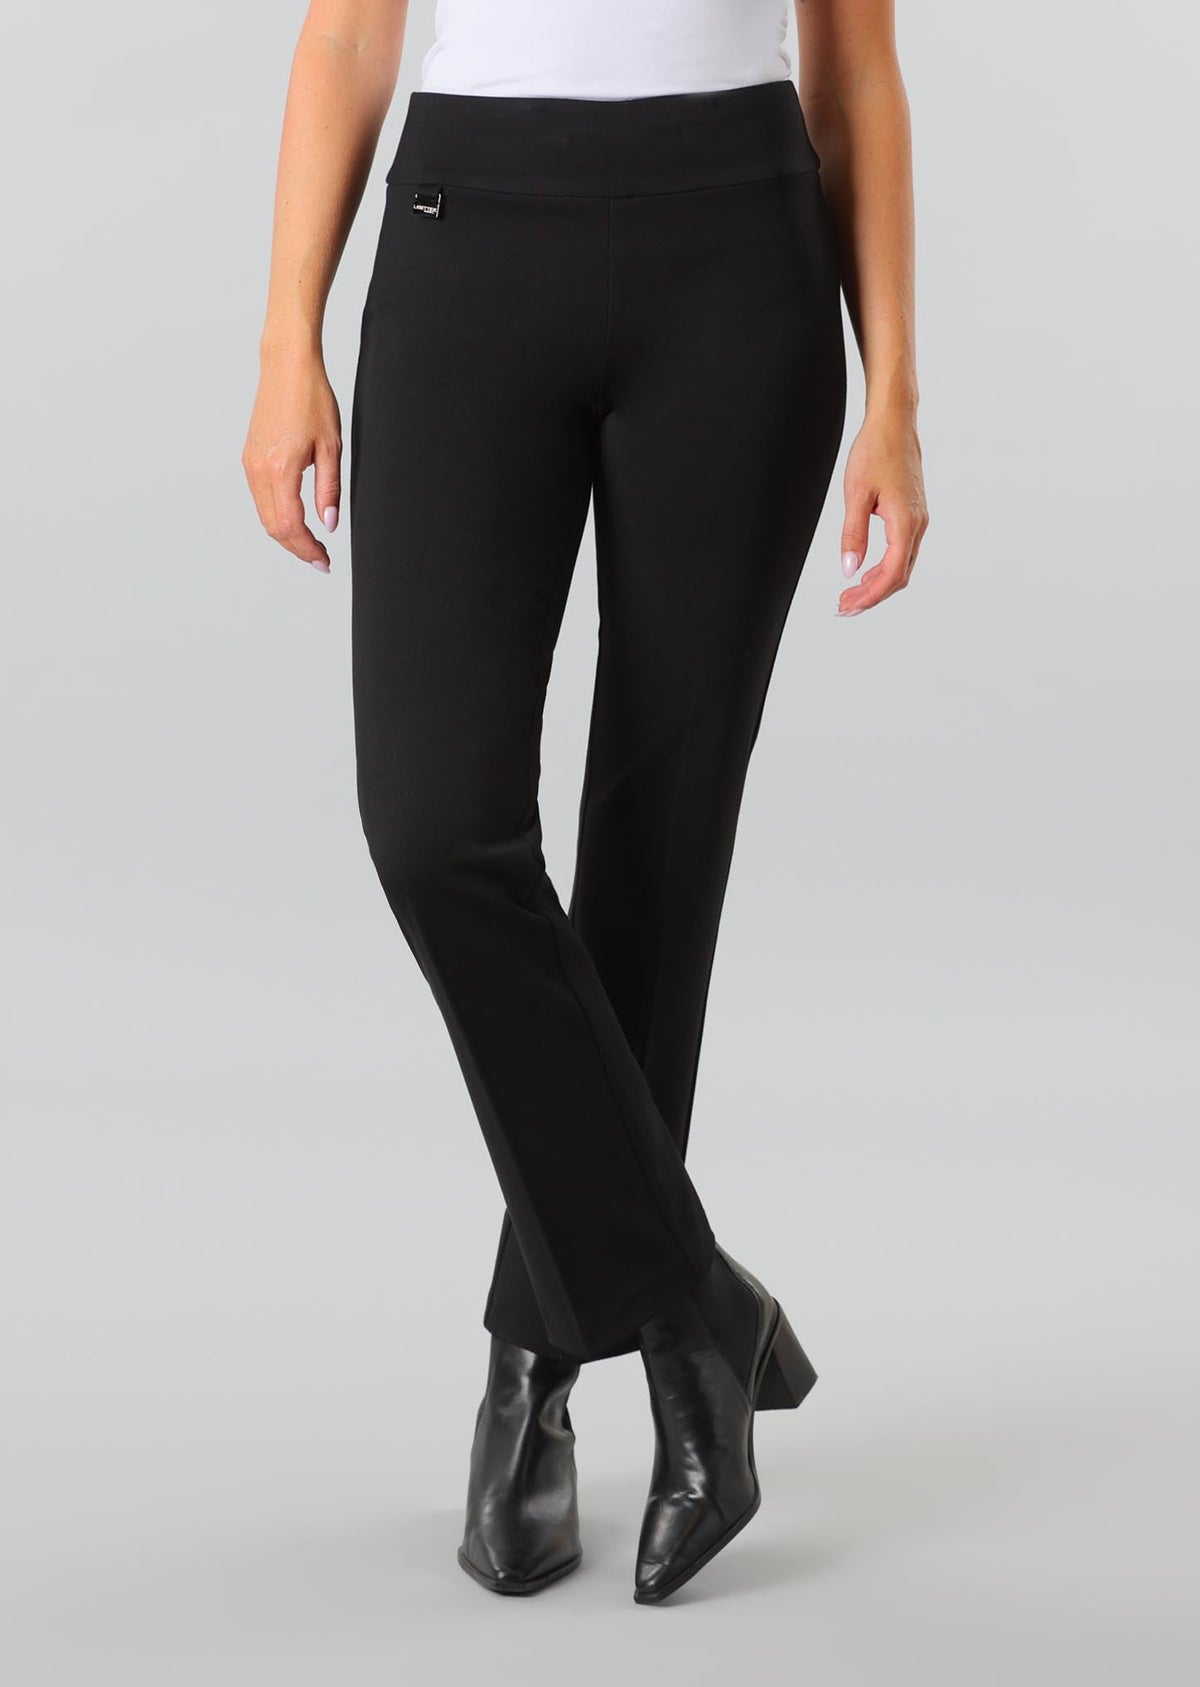 Pantalon pour femme par Lisette L | 25856 Black/Noir | Boutique Vvög, vêtements mode pour homme et femme